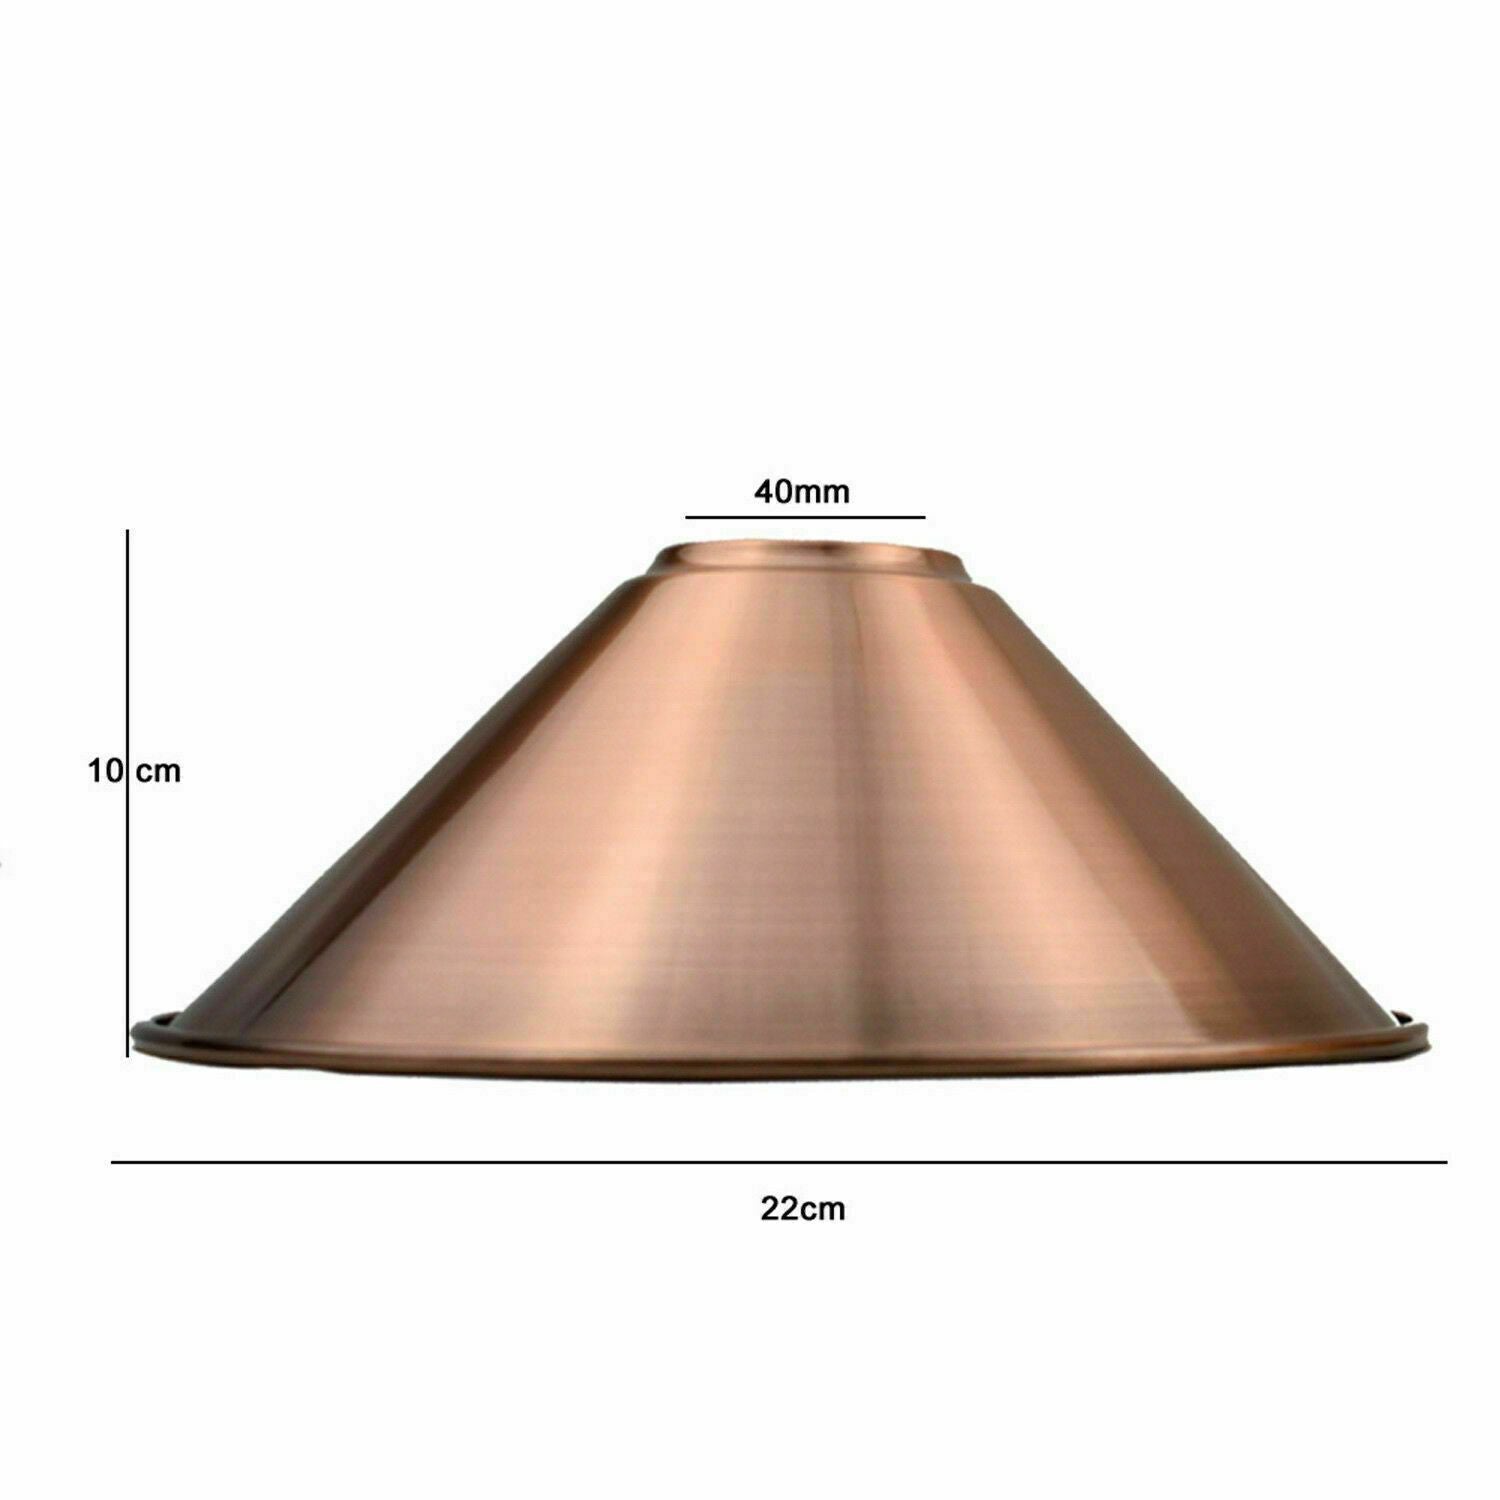 Metall-Decke Pendelleuchten mit Lampenschirm   22 cm